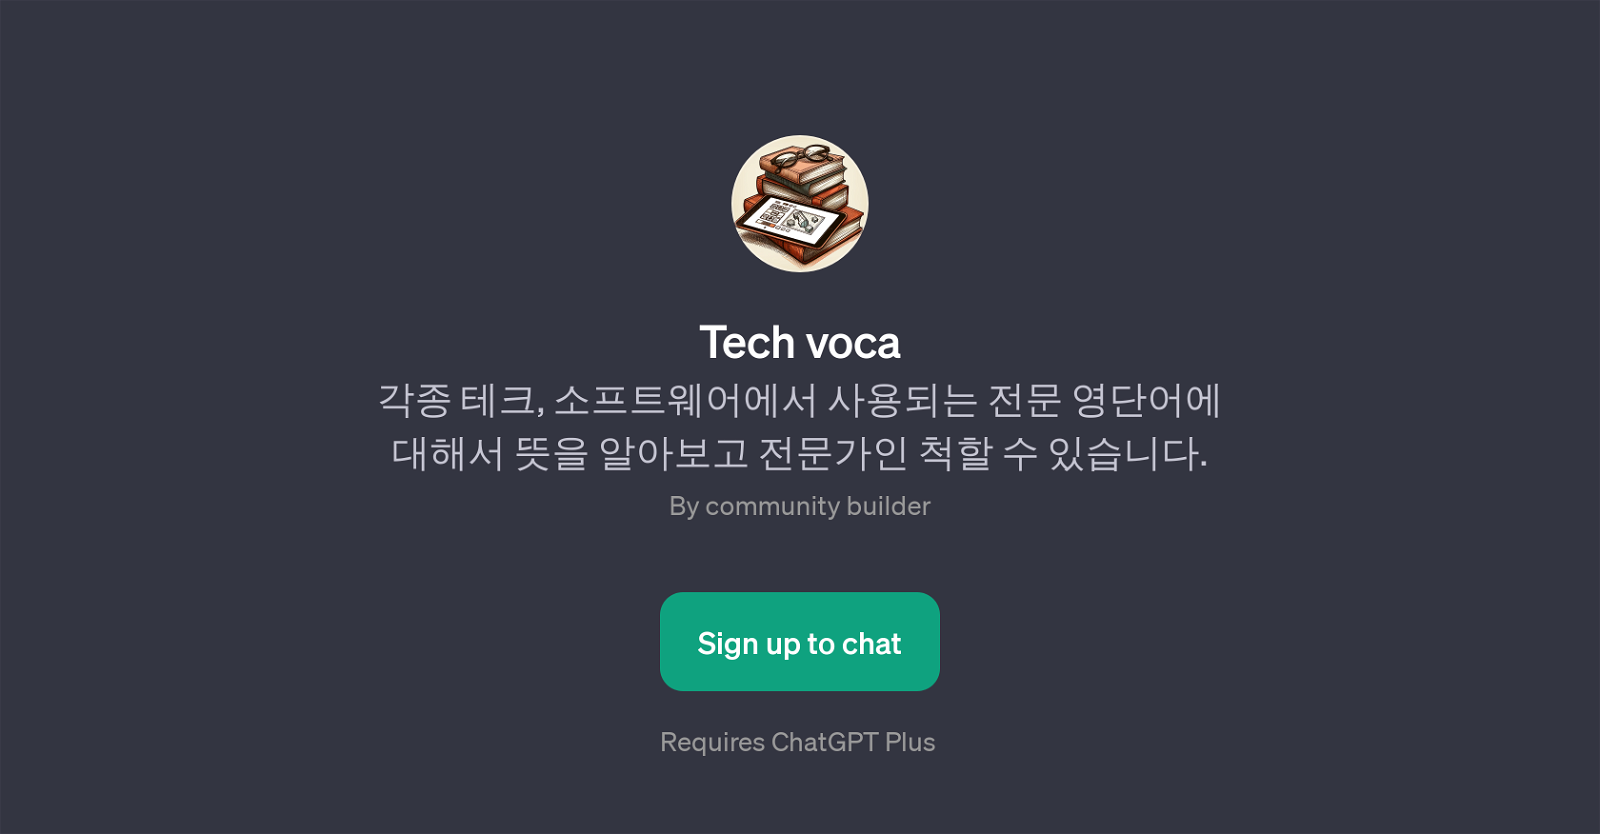 Tech voca website